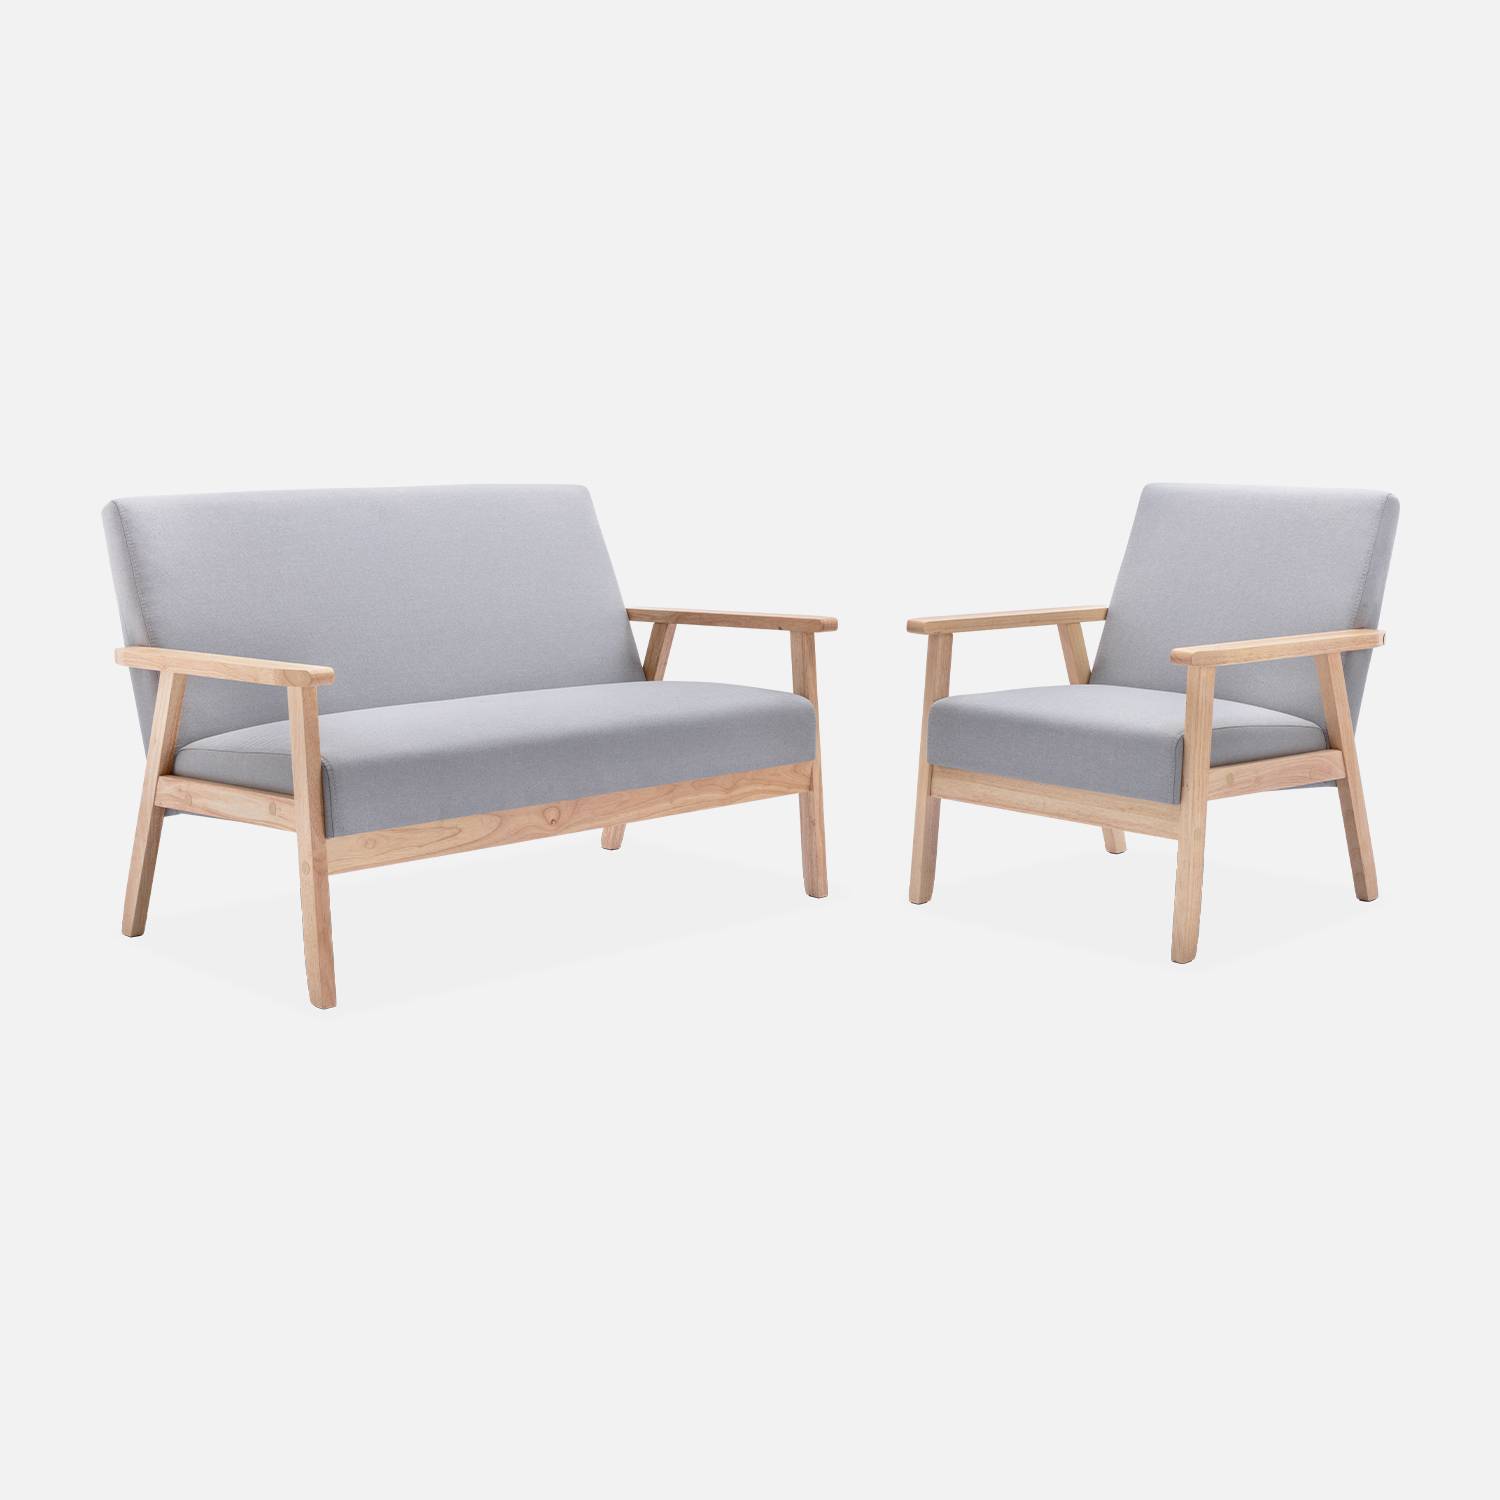 Banco y sillón escandinavos de madera y tela gris claro | sweeek